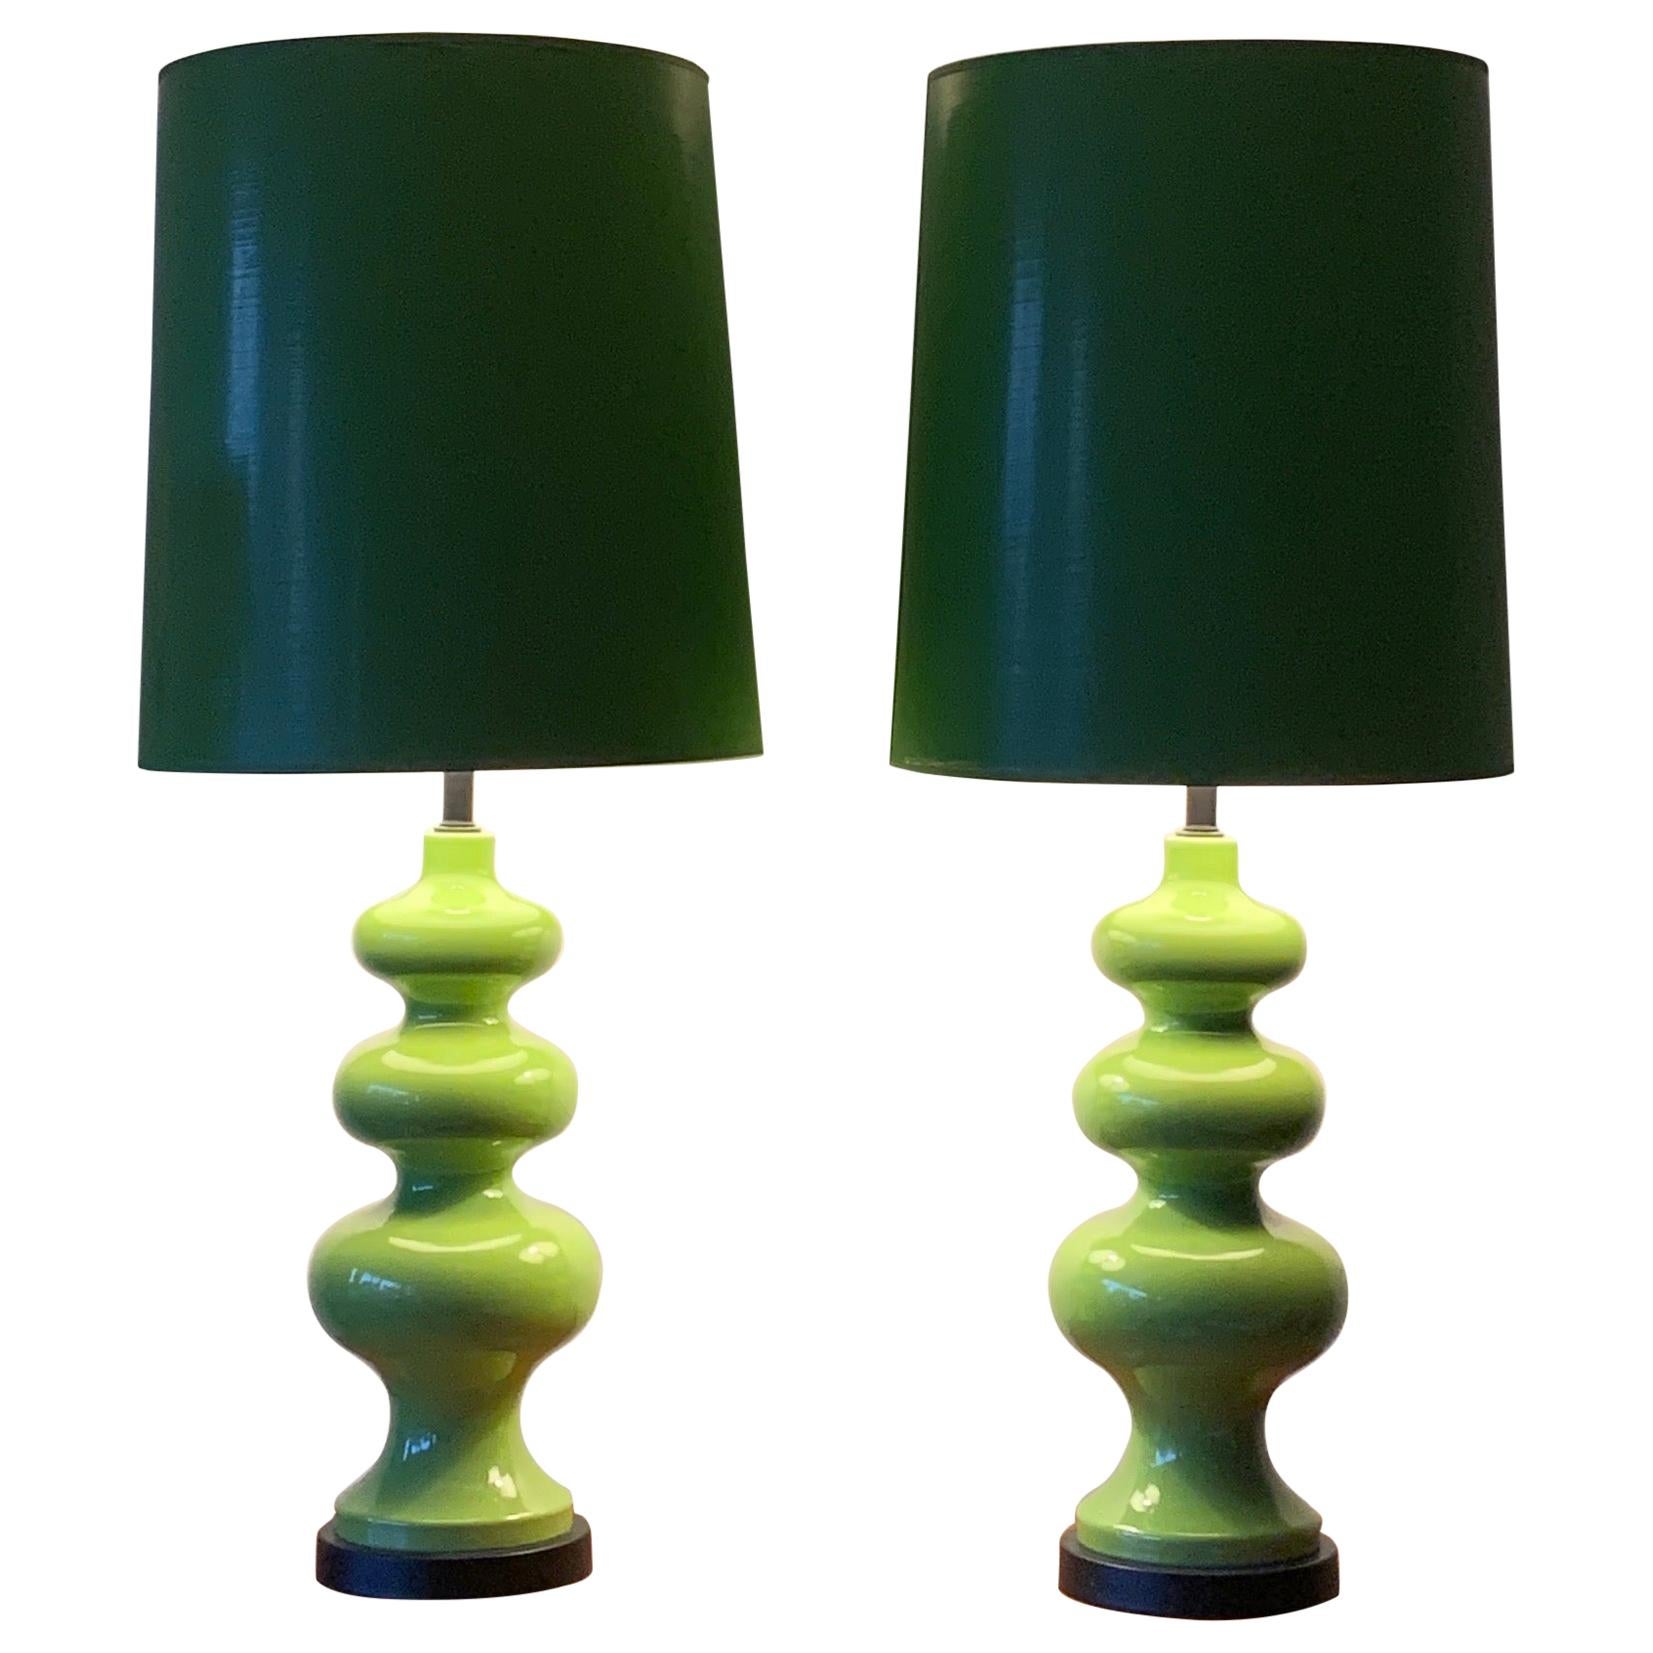 Pair of Impressive Ceramic Lamps circa 1970s with Original Shades